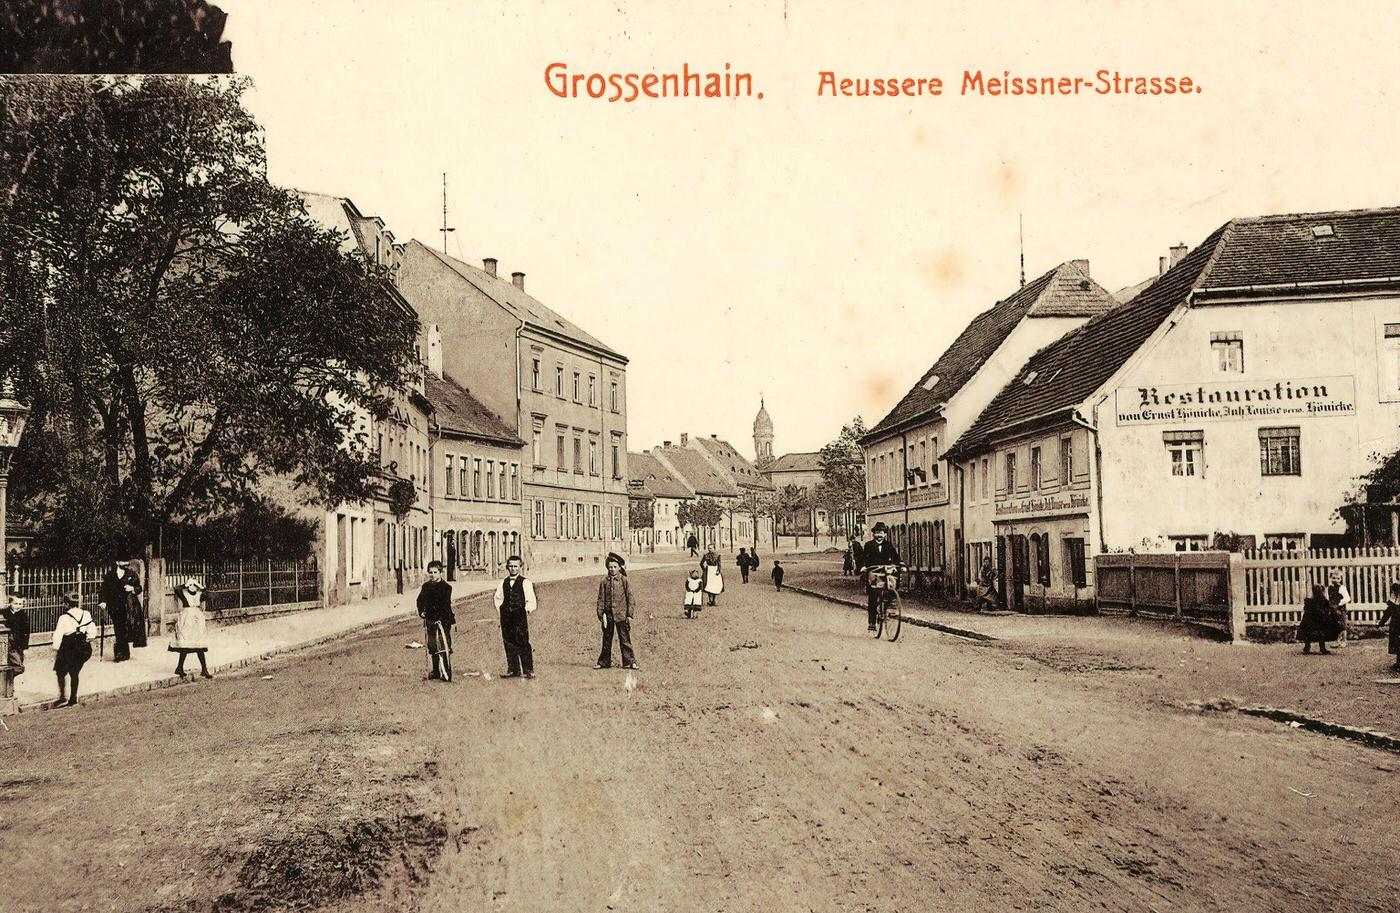 Bicycles in Germany, Restaurants in Landkreis Meissen, Grossenhain, Landkreis Meissen, €ussere Meissner Strasse, 1901.